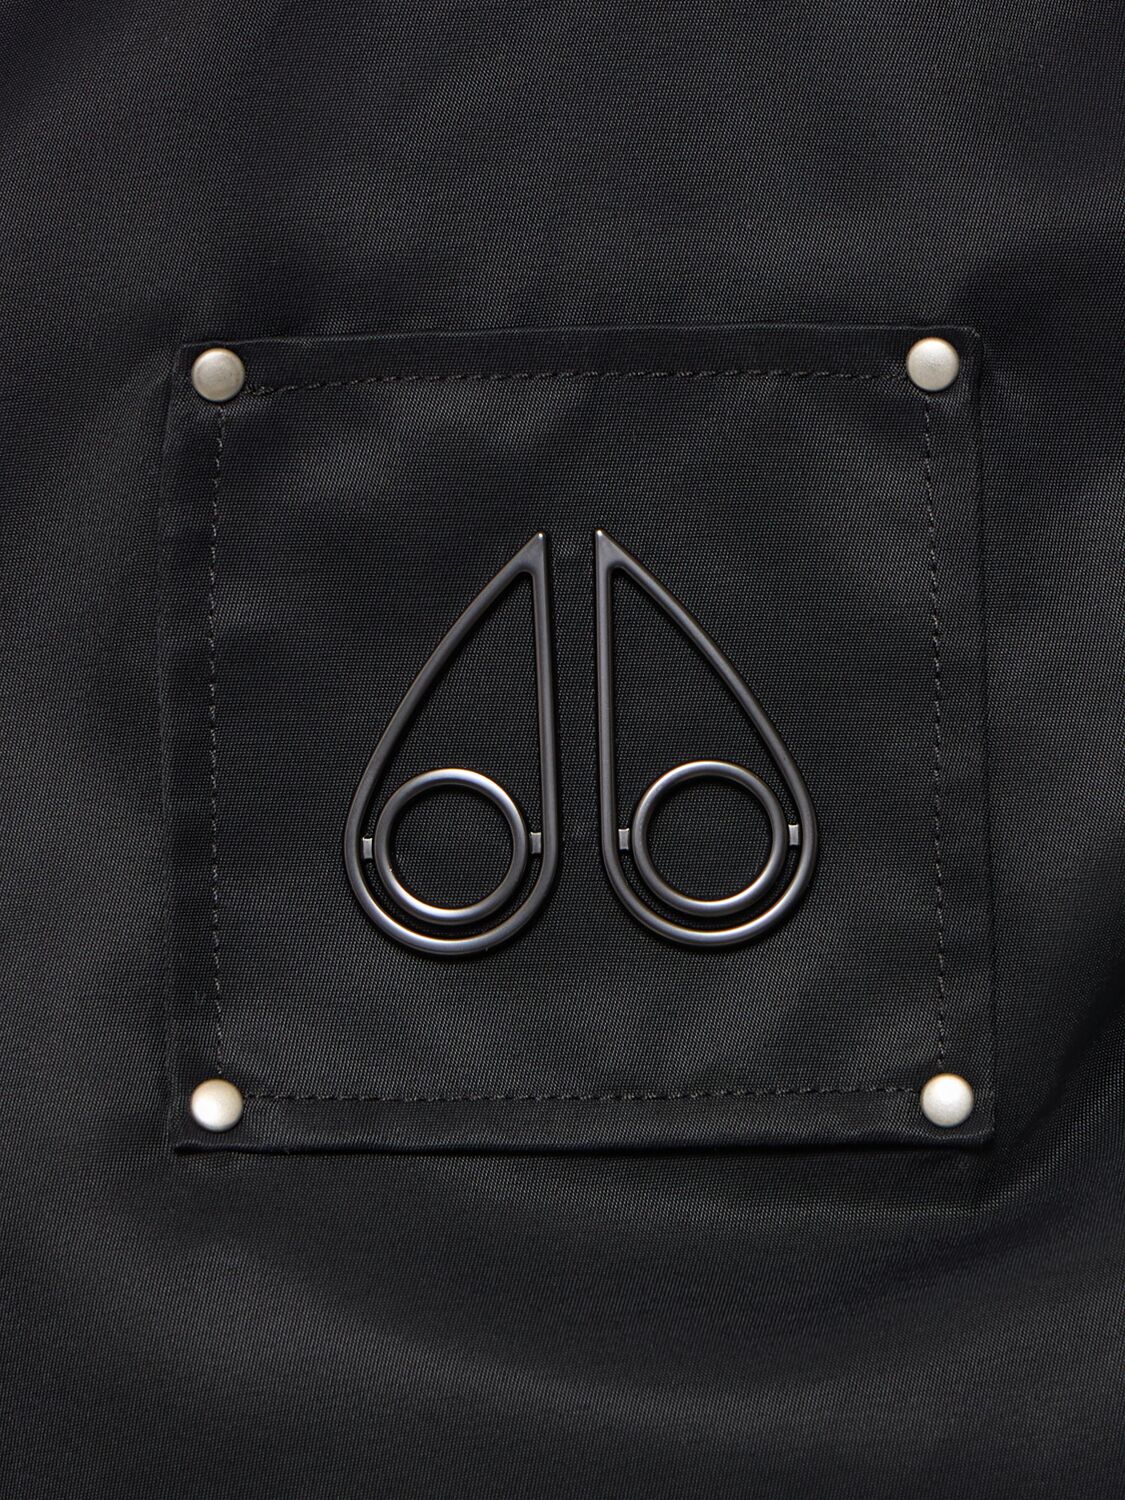 Shop Moose Knuckles Rougemont Puffer Jacket In Black